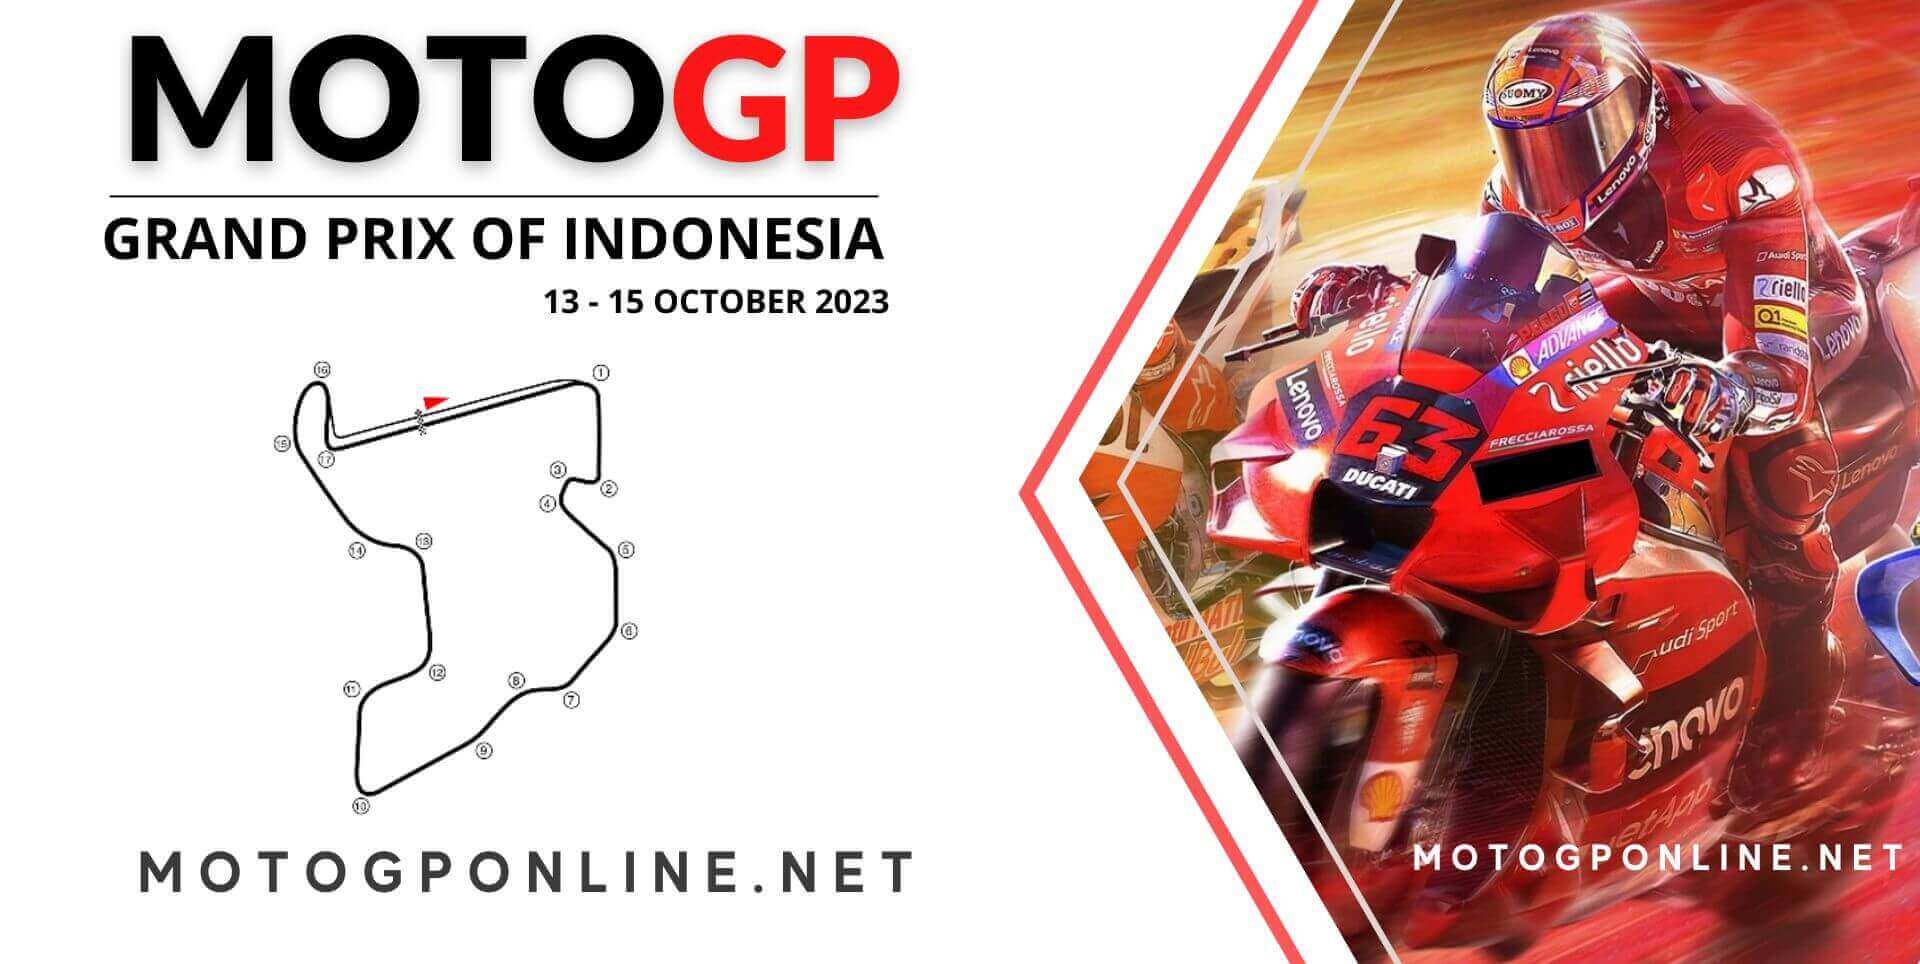 Indonesia MotoGP Live Online